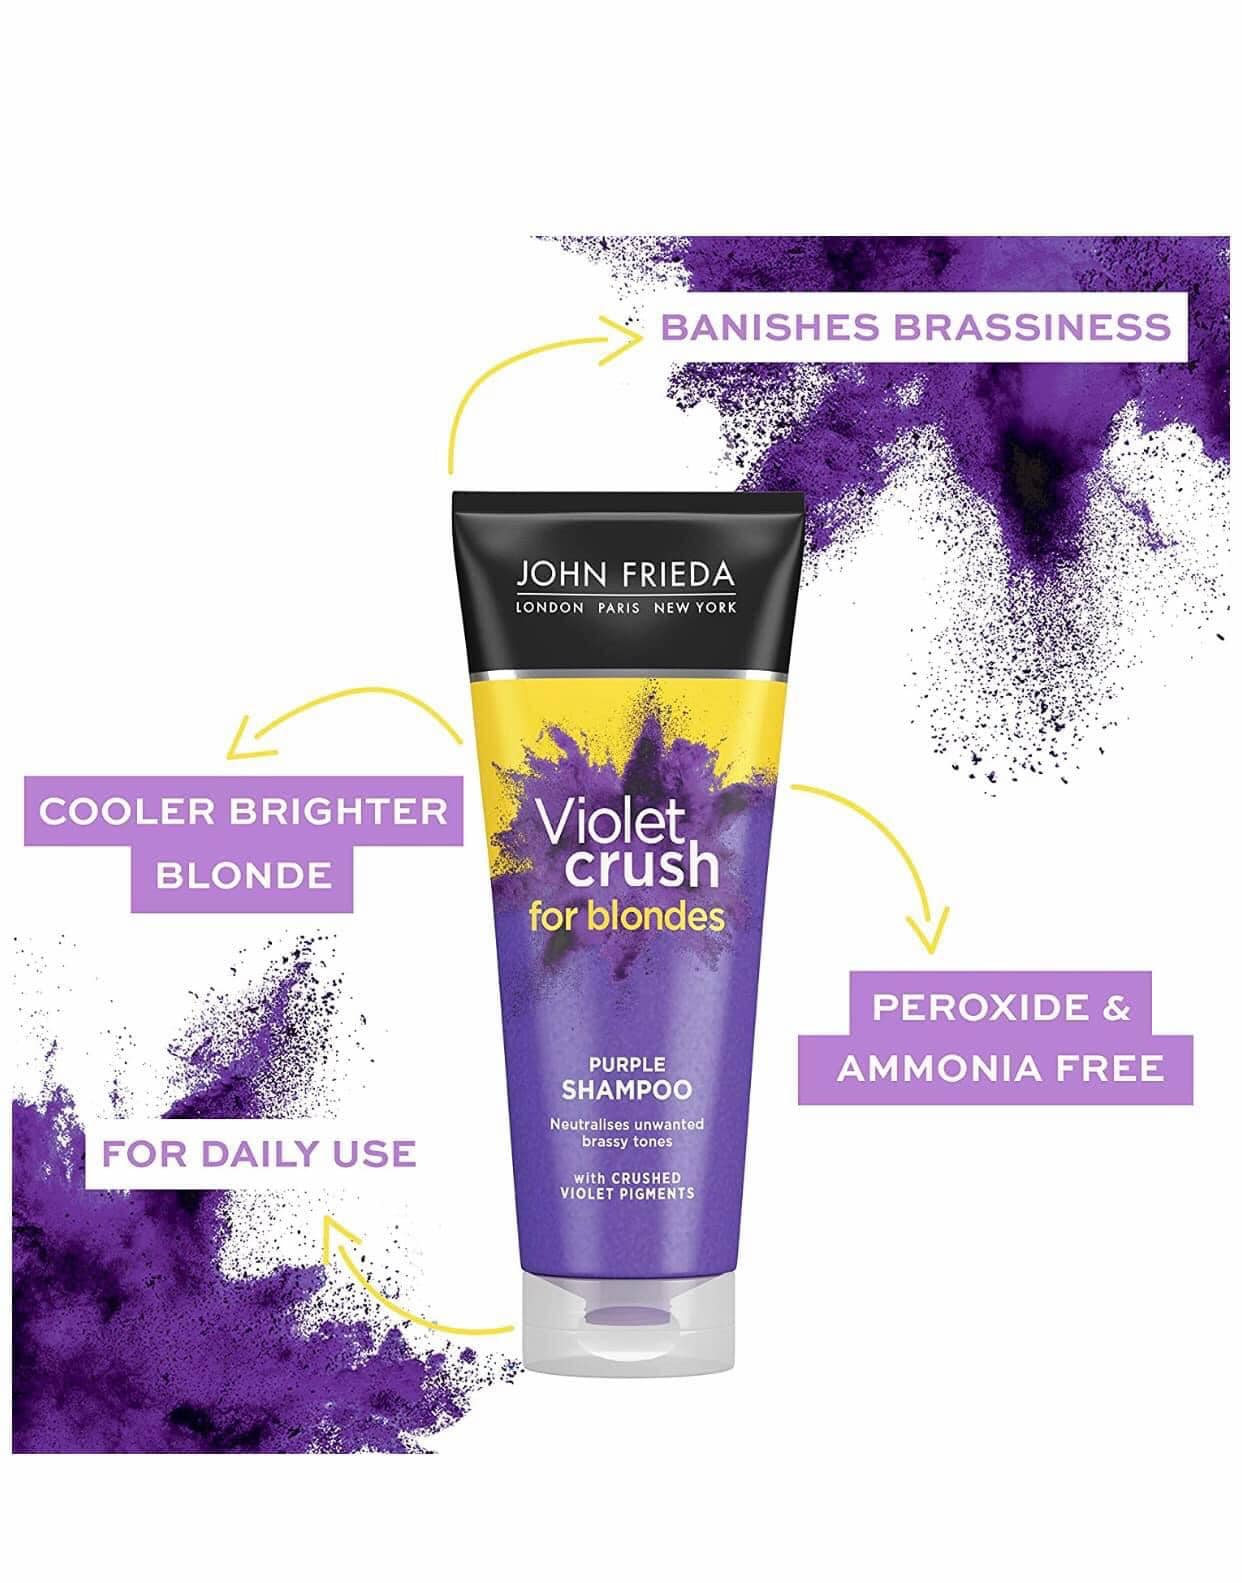 John Frieda Violet Crush Purple Shampoo